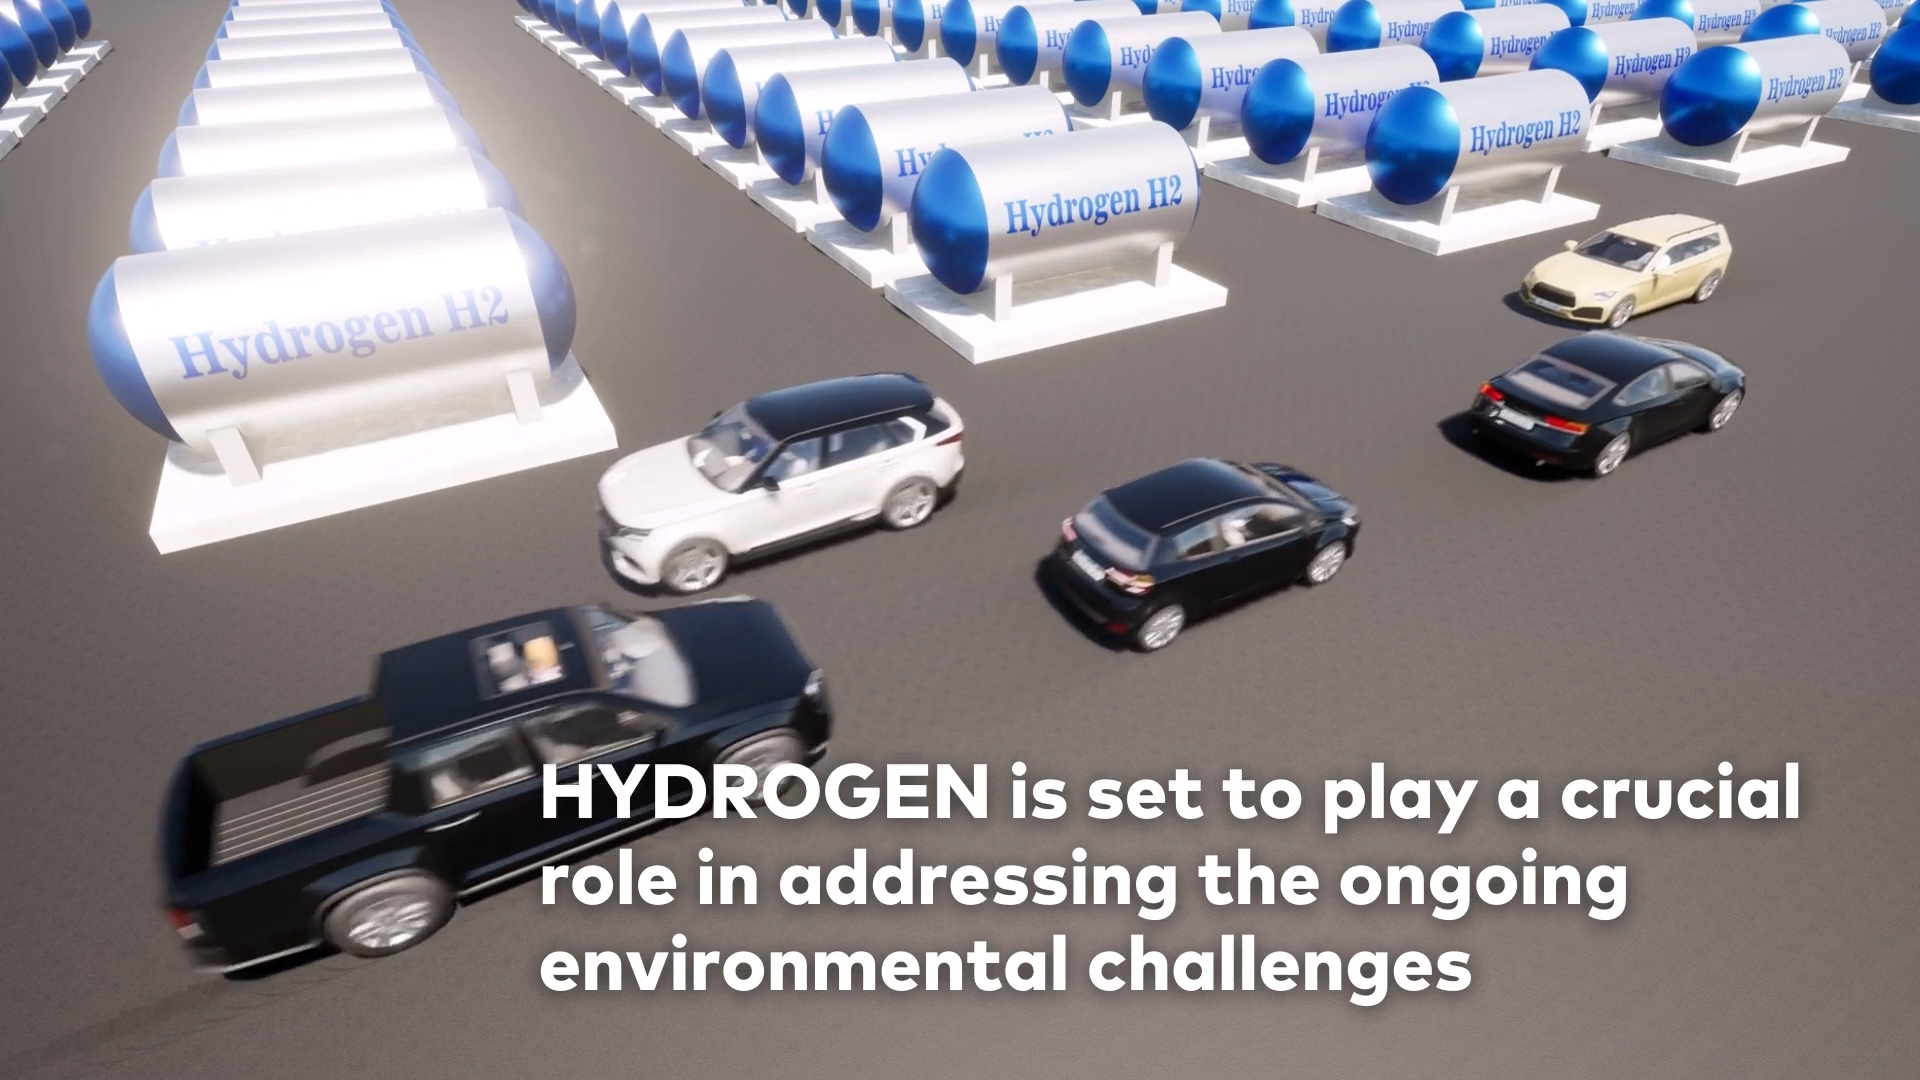 21世纪的绿色动力 ” 氢”装出行